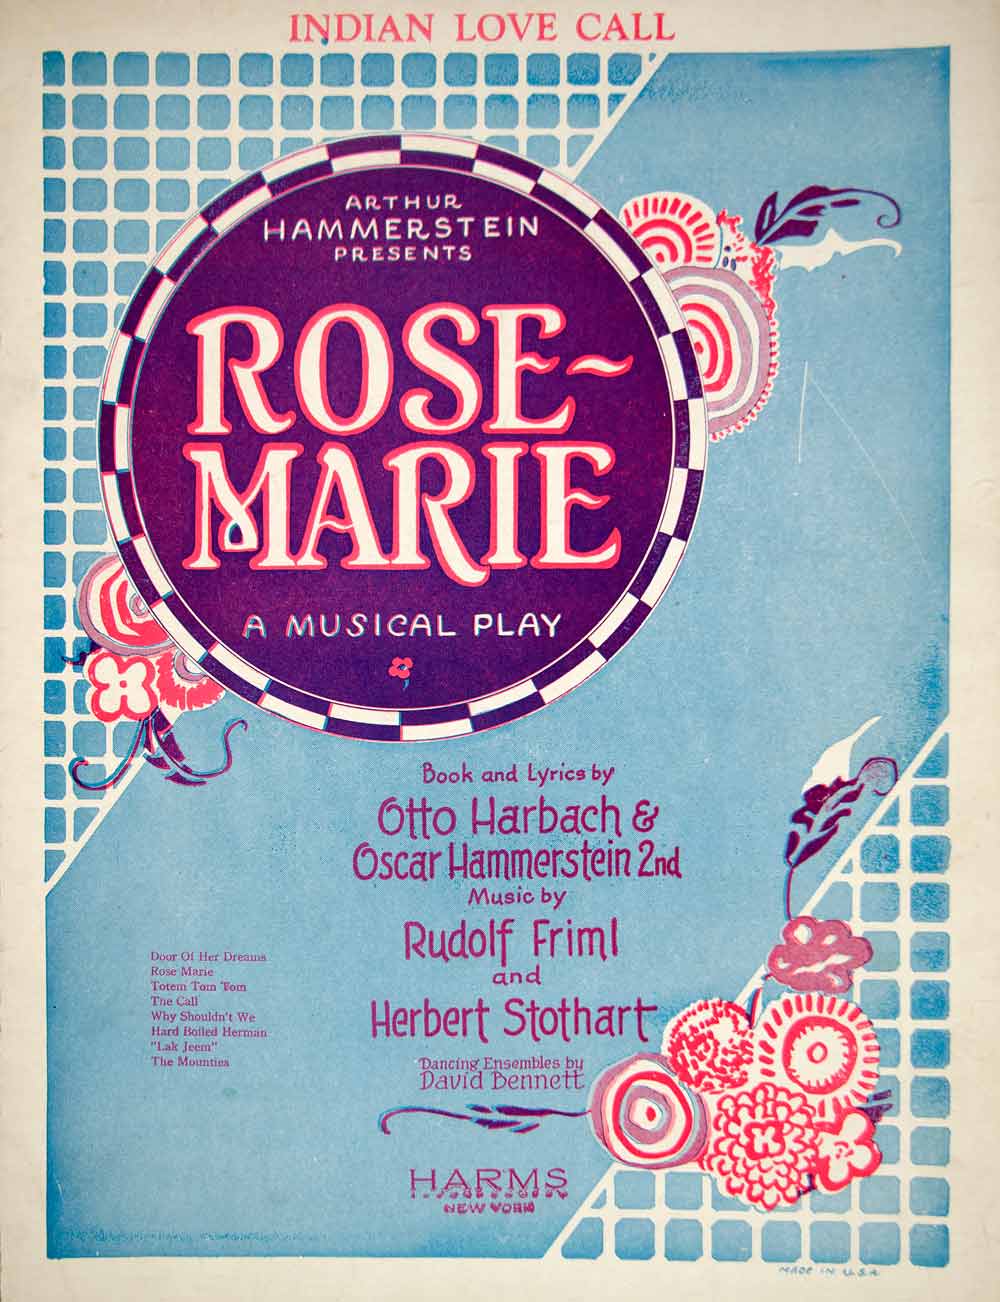 1924 Sheet Music Indian Love Call Rose-Marie Oscar Hammerstein II Musical ZSMA1